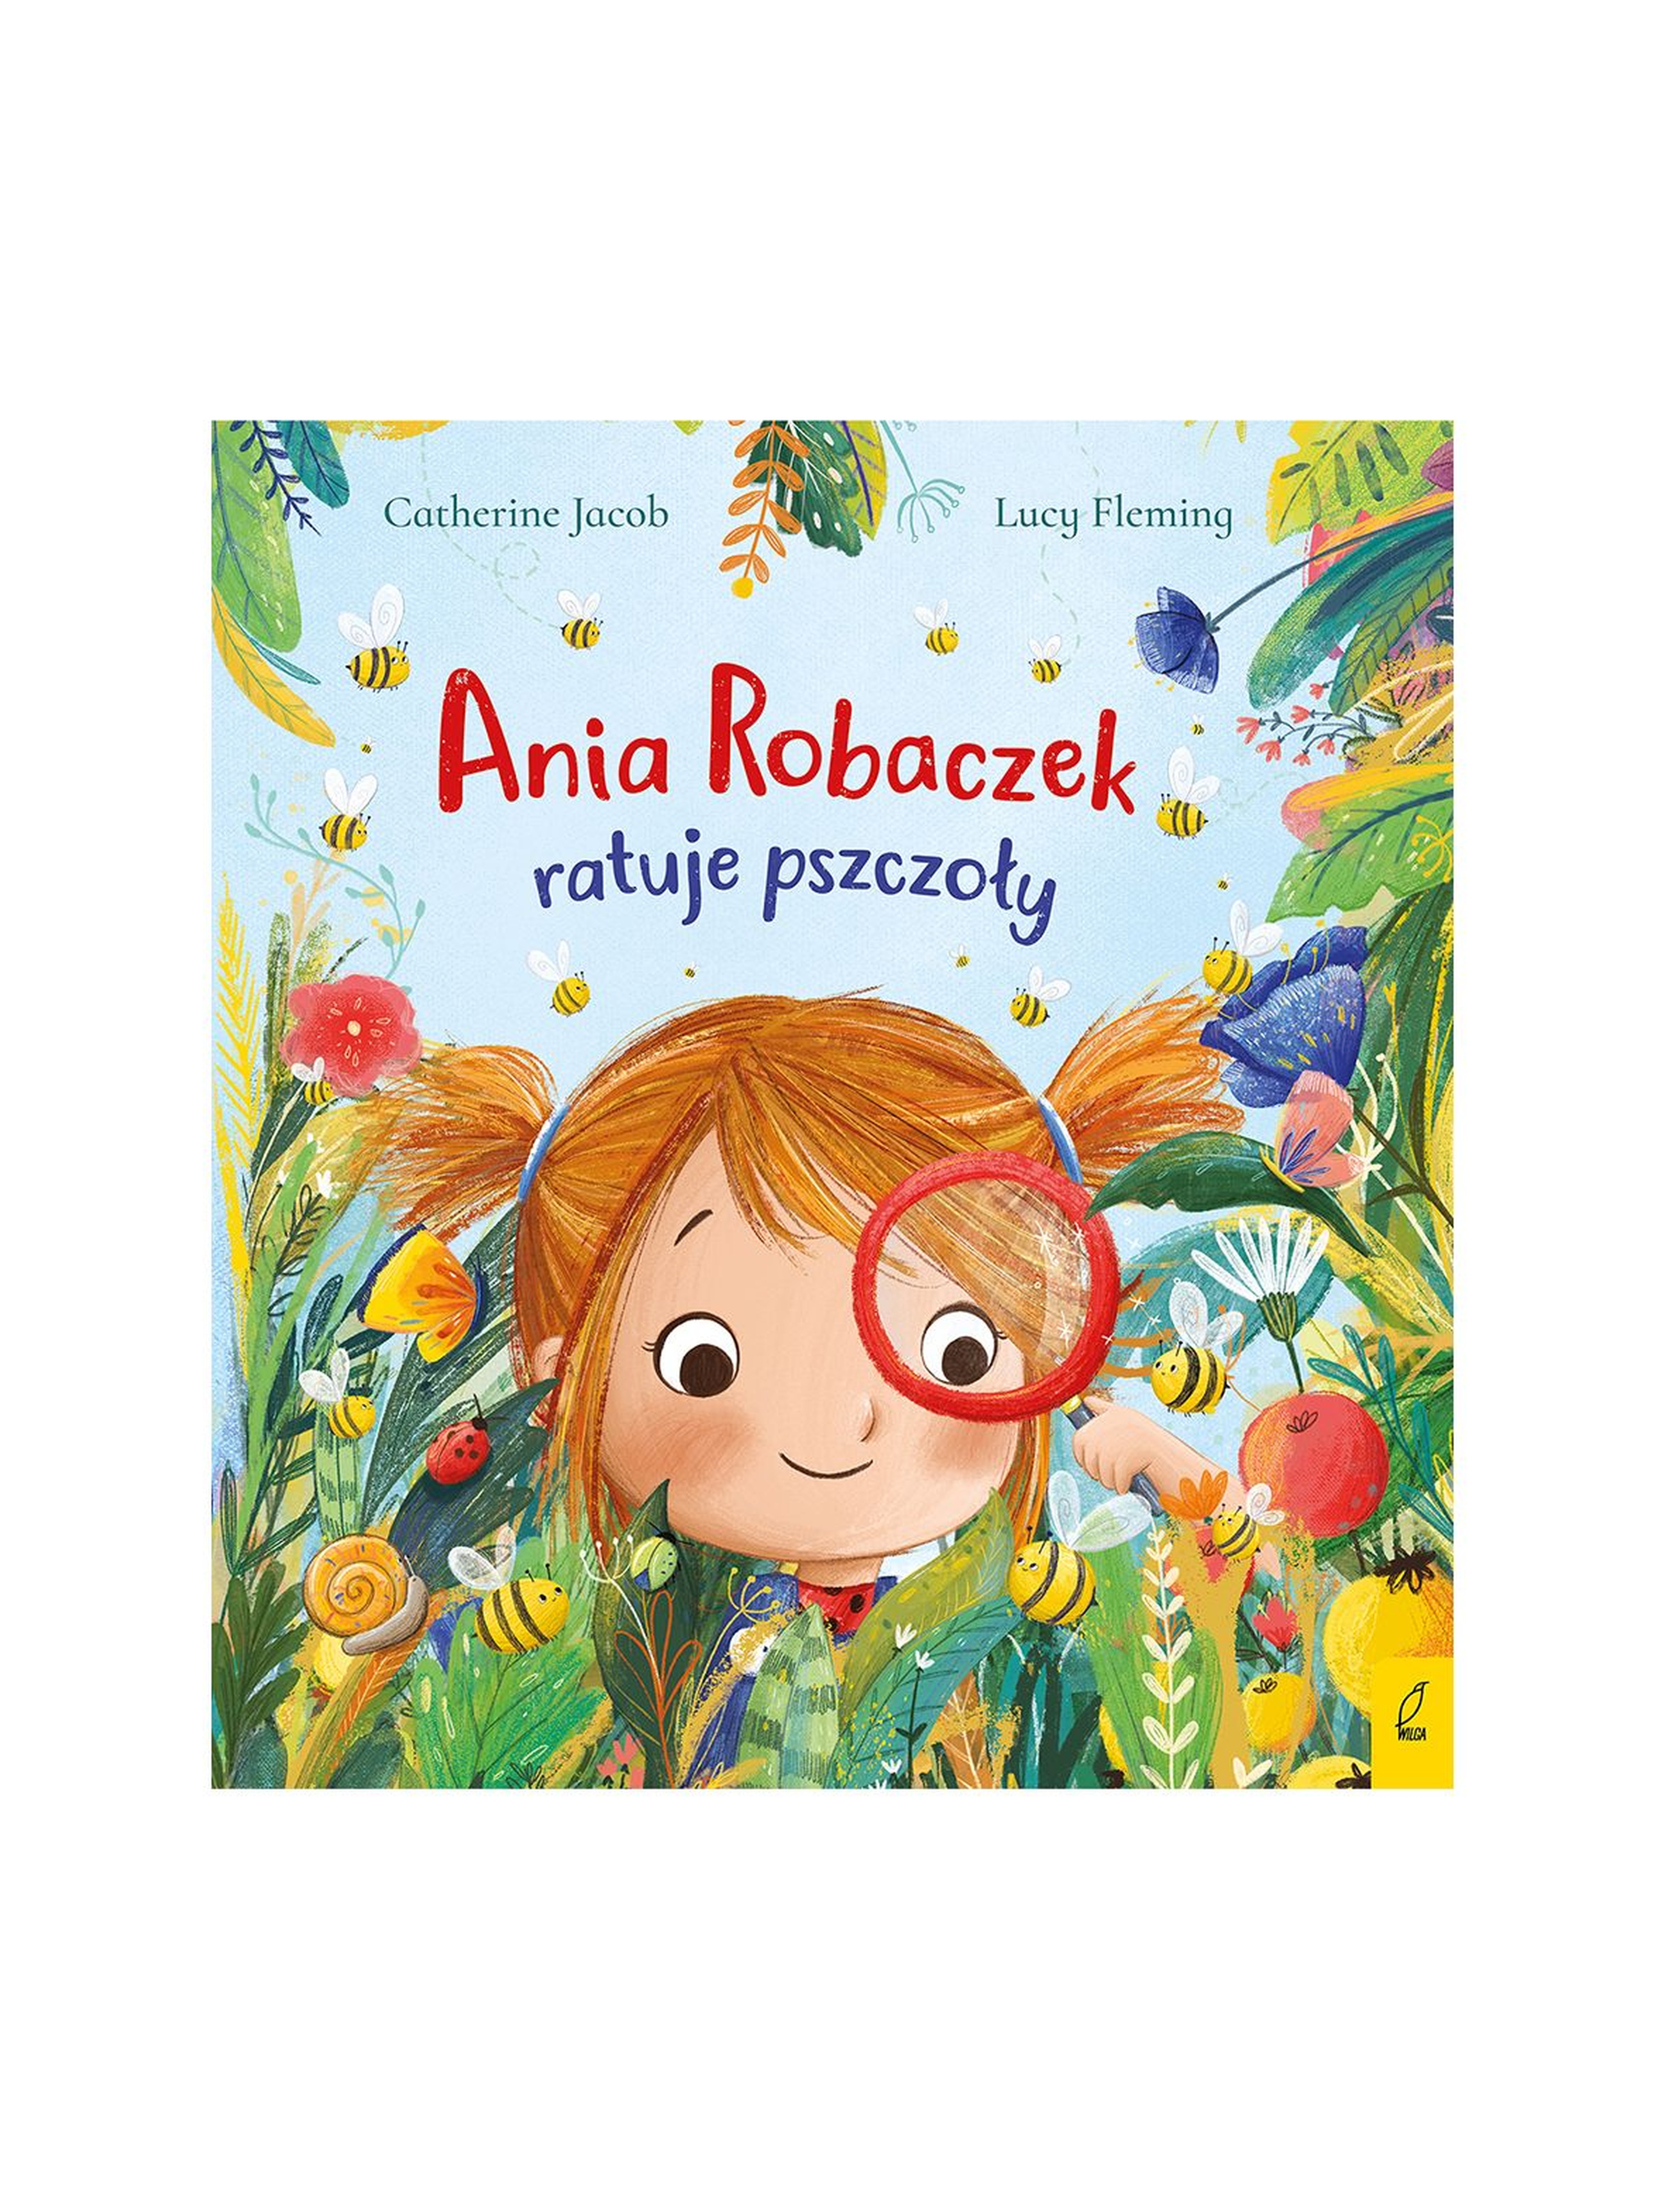 Ania Robaczek ratuje pszczoły - książka dla dzieci